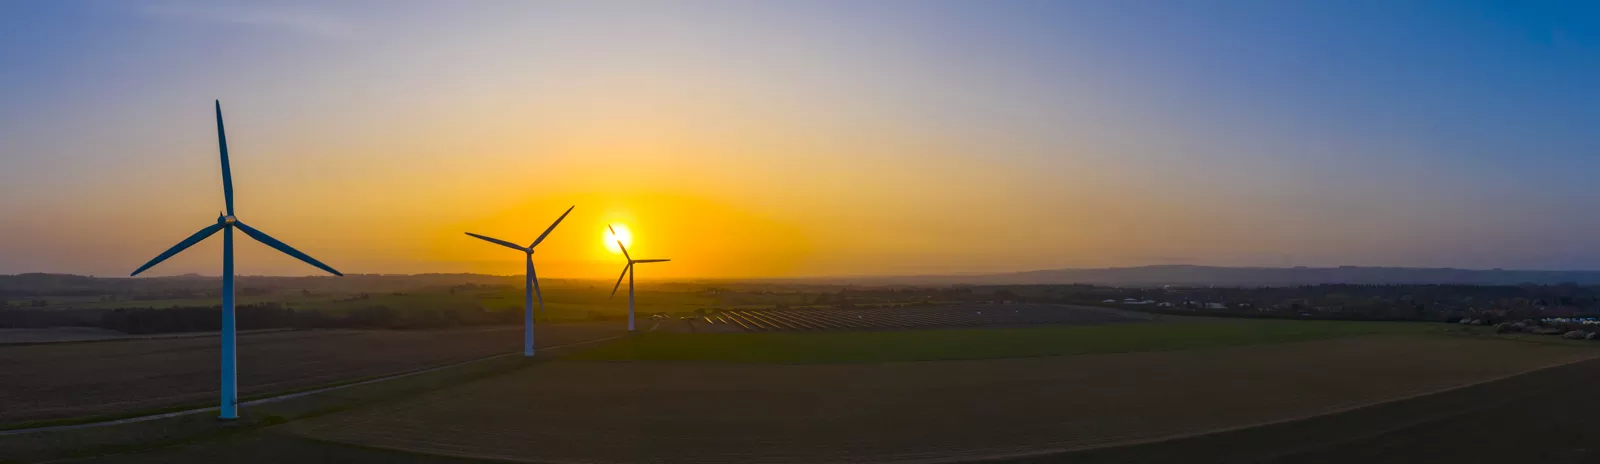 Dre Windkraftanlagen mit Sonnenuntergang